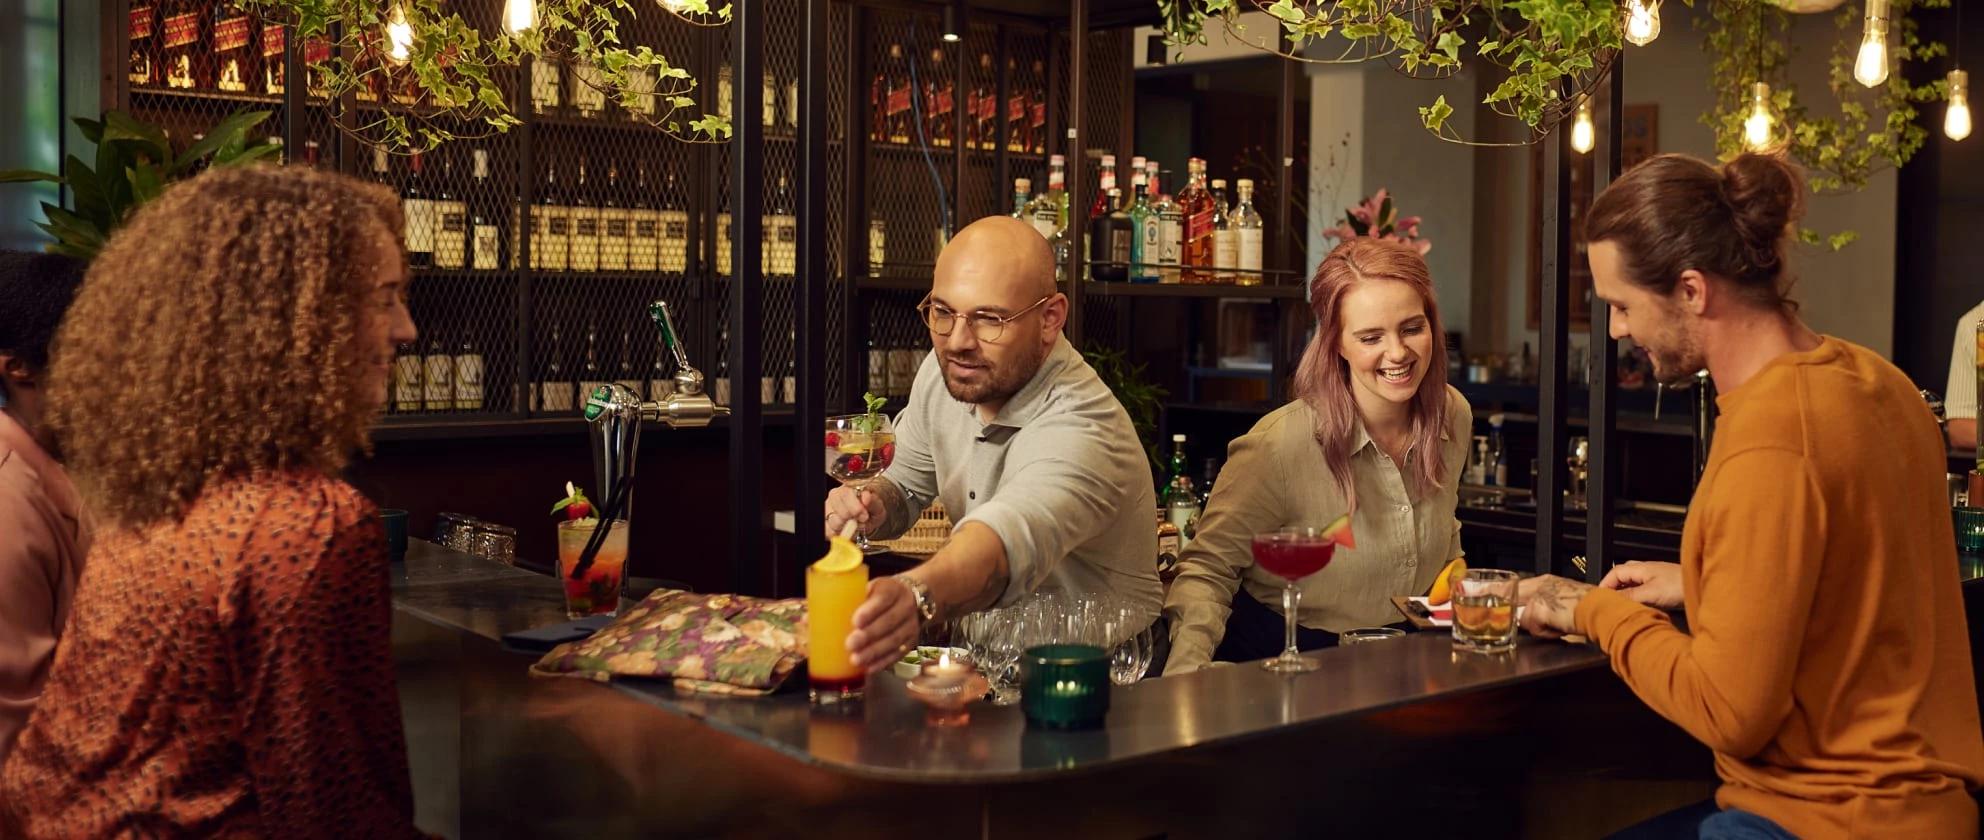 to bartendere, der leverer drinks til gæsterne